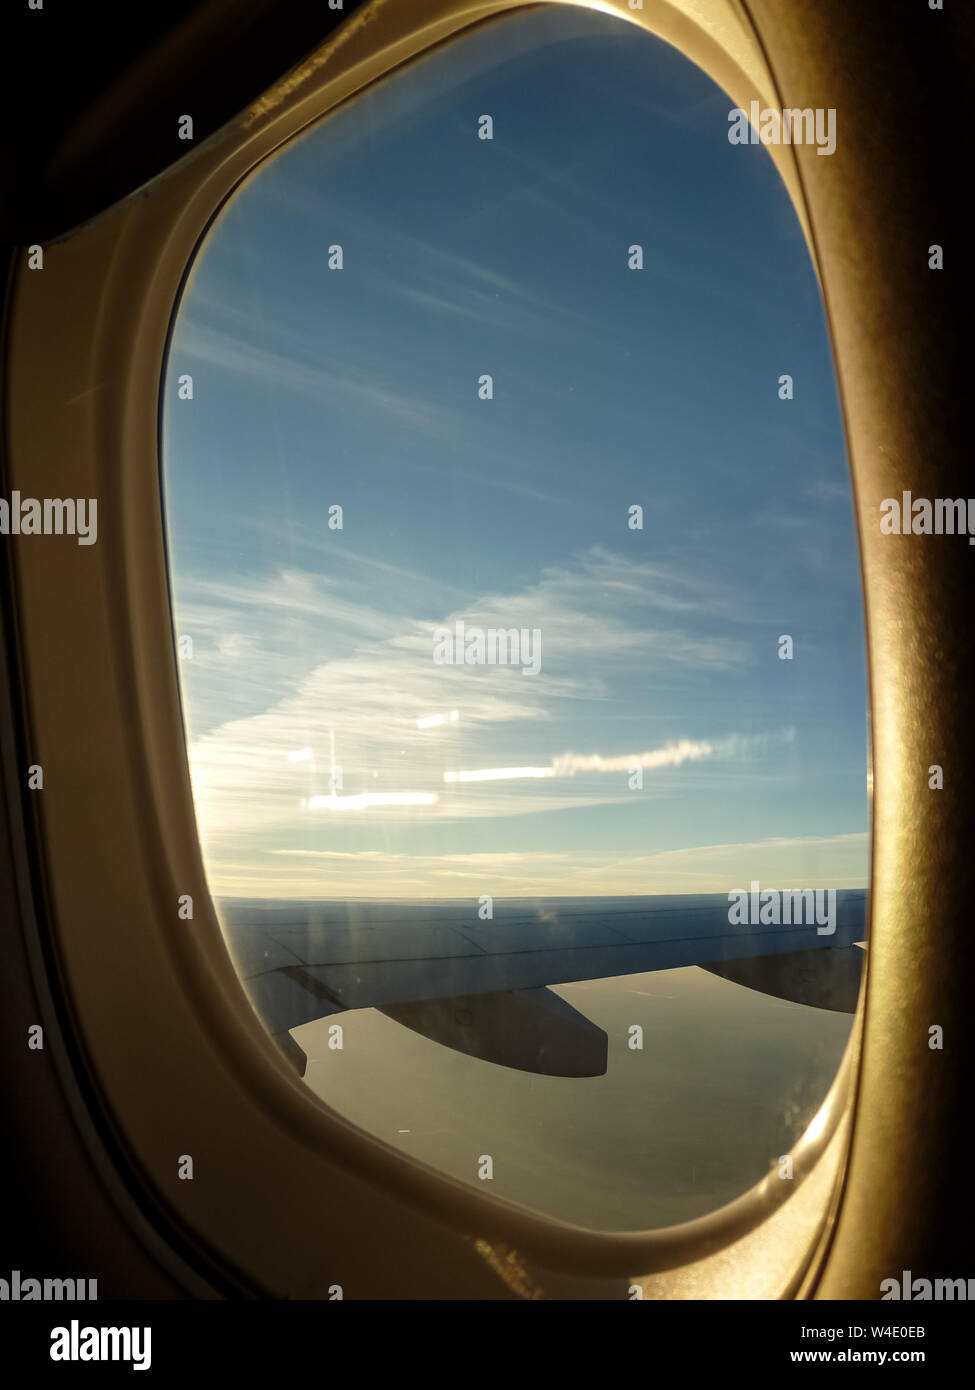 Ventana de aviones con vista aérea de aeronaves de ala y cielo con nubes Foto de stock